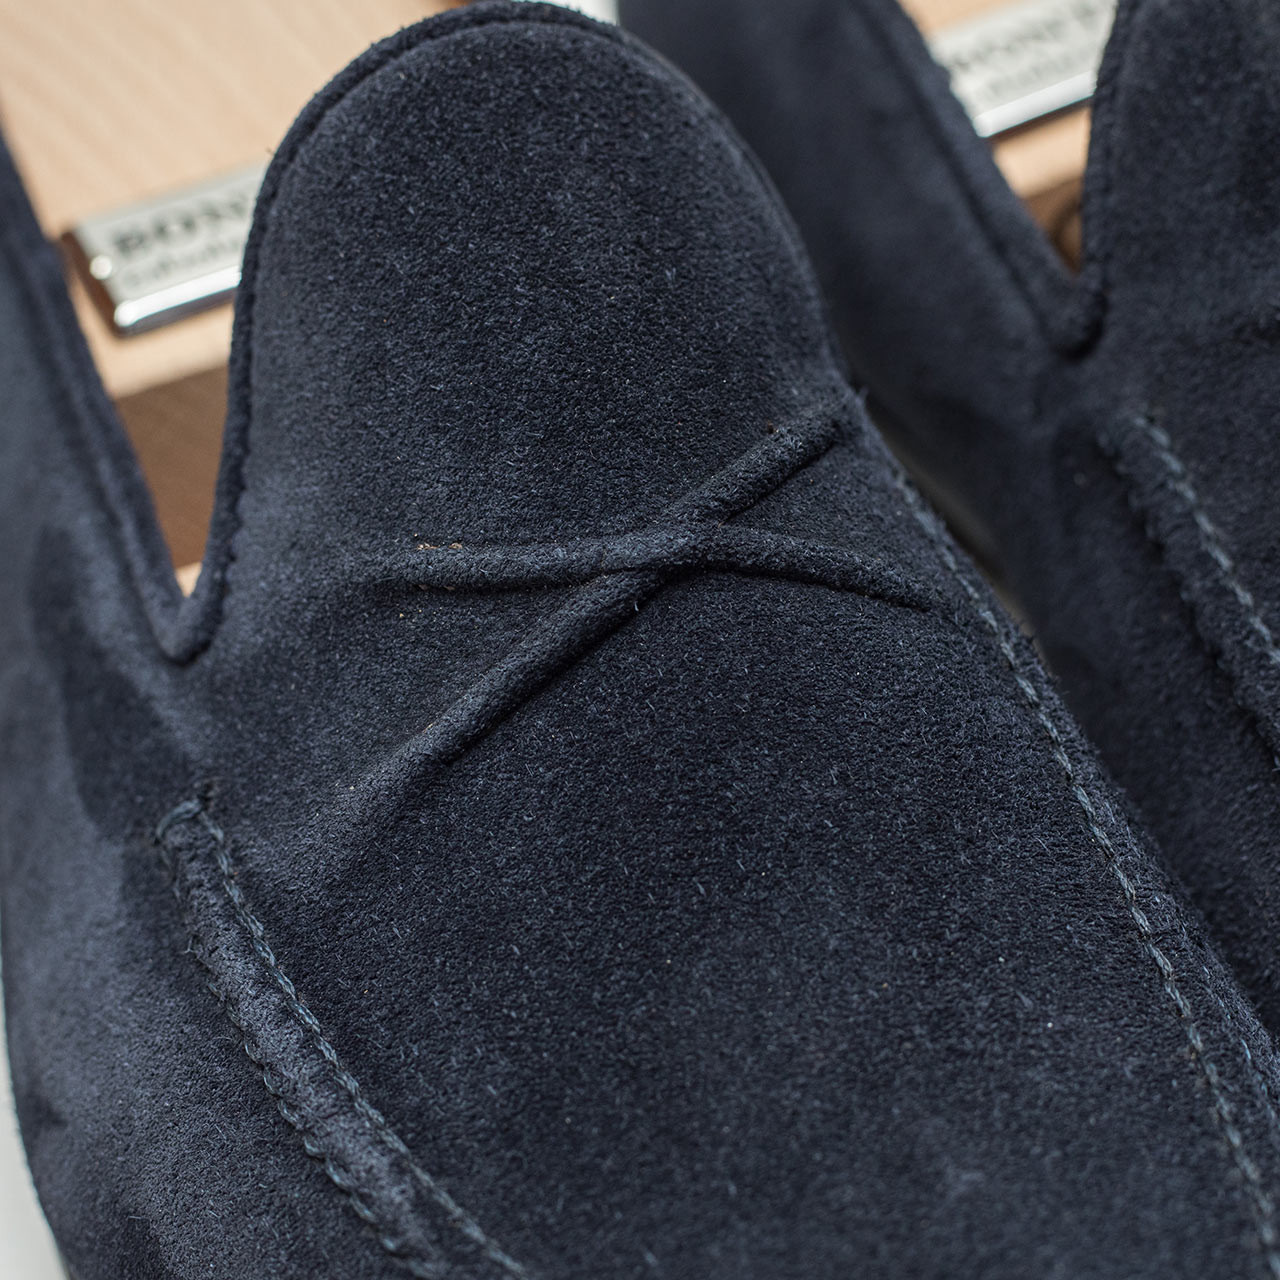 Bontoni loafer in dunkelblau aus Veloursleder